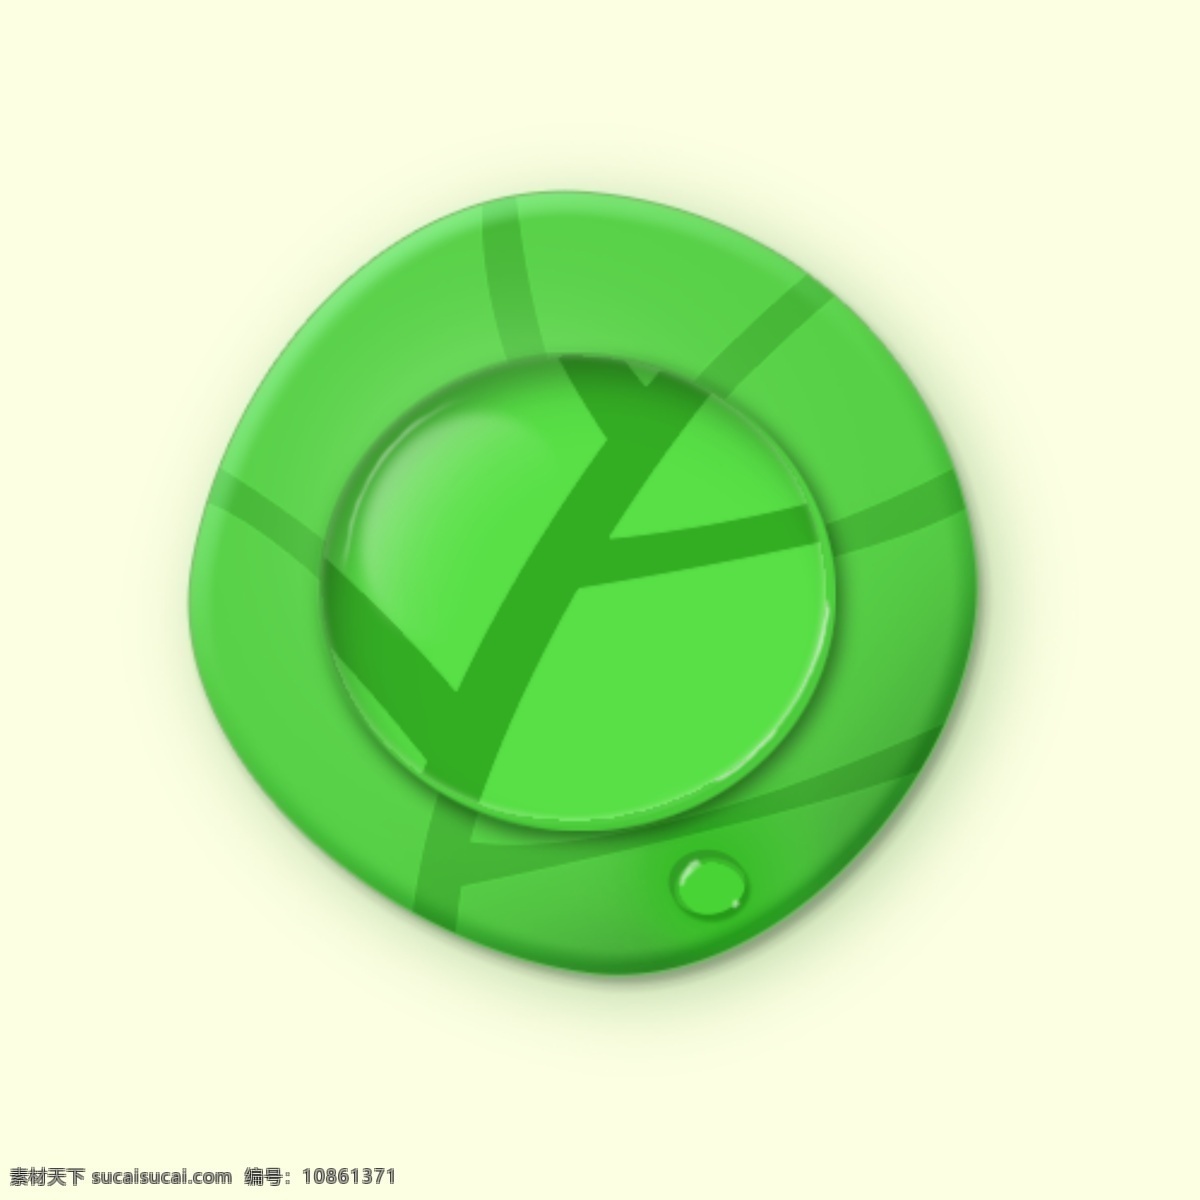 平面 icon ui 平面设计 iocn设计 水珠 叶子 手机ui 图标 ps 水滴效果 绿色